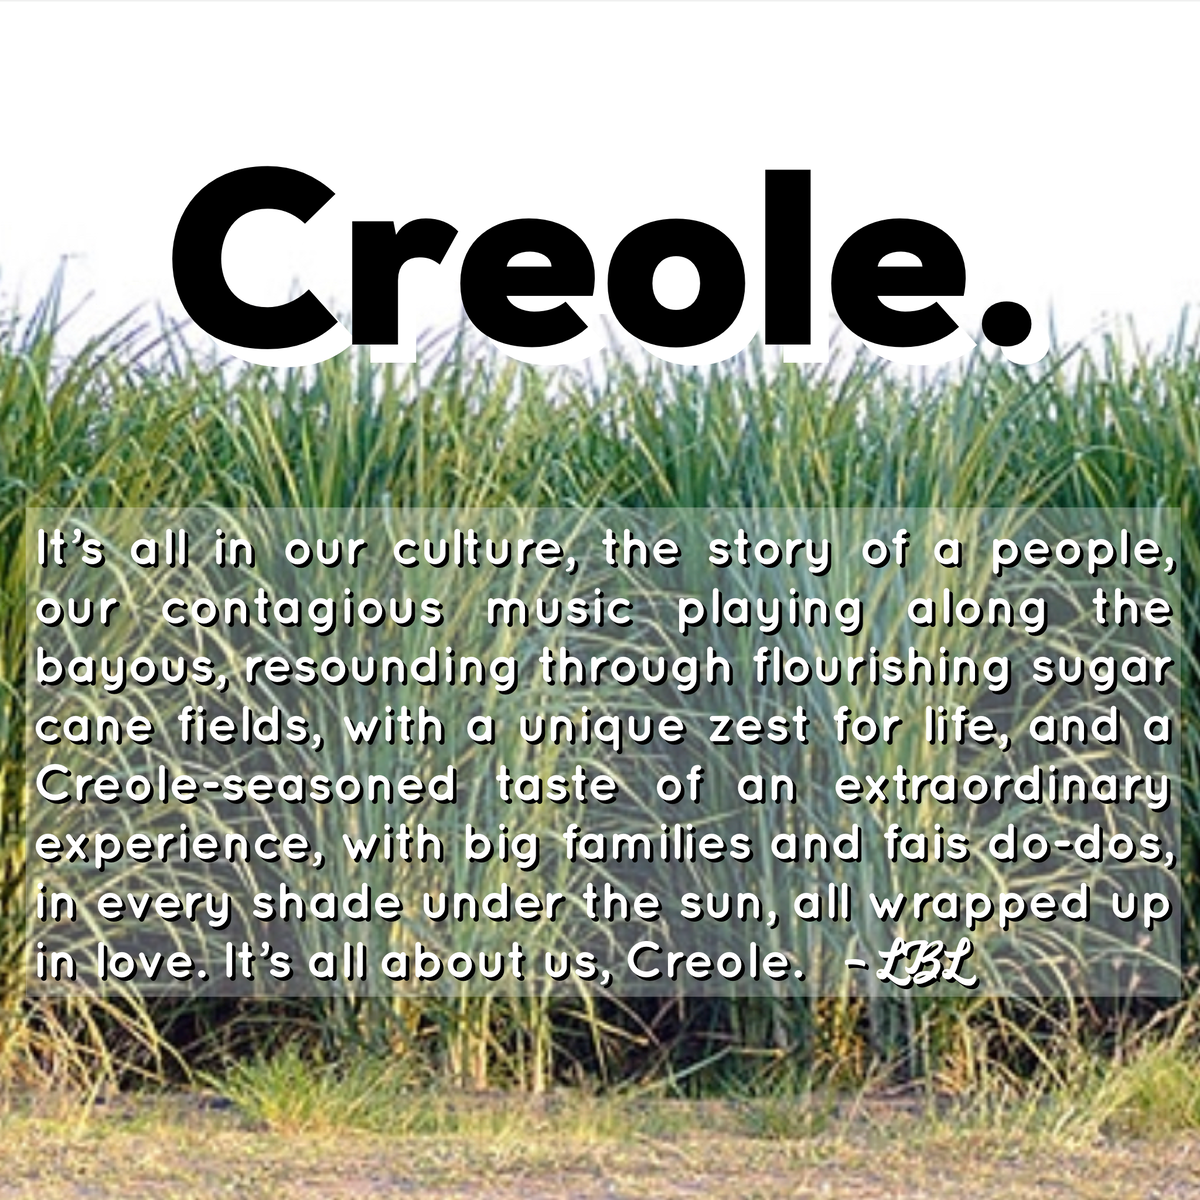 Creole Culture